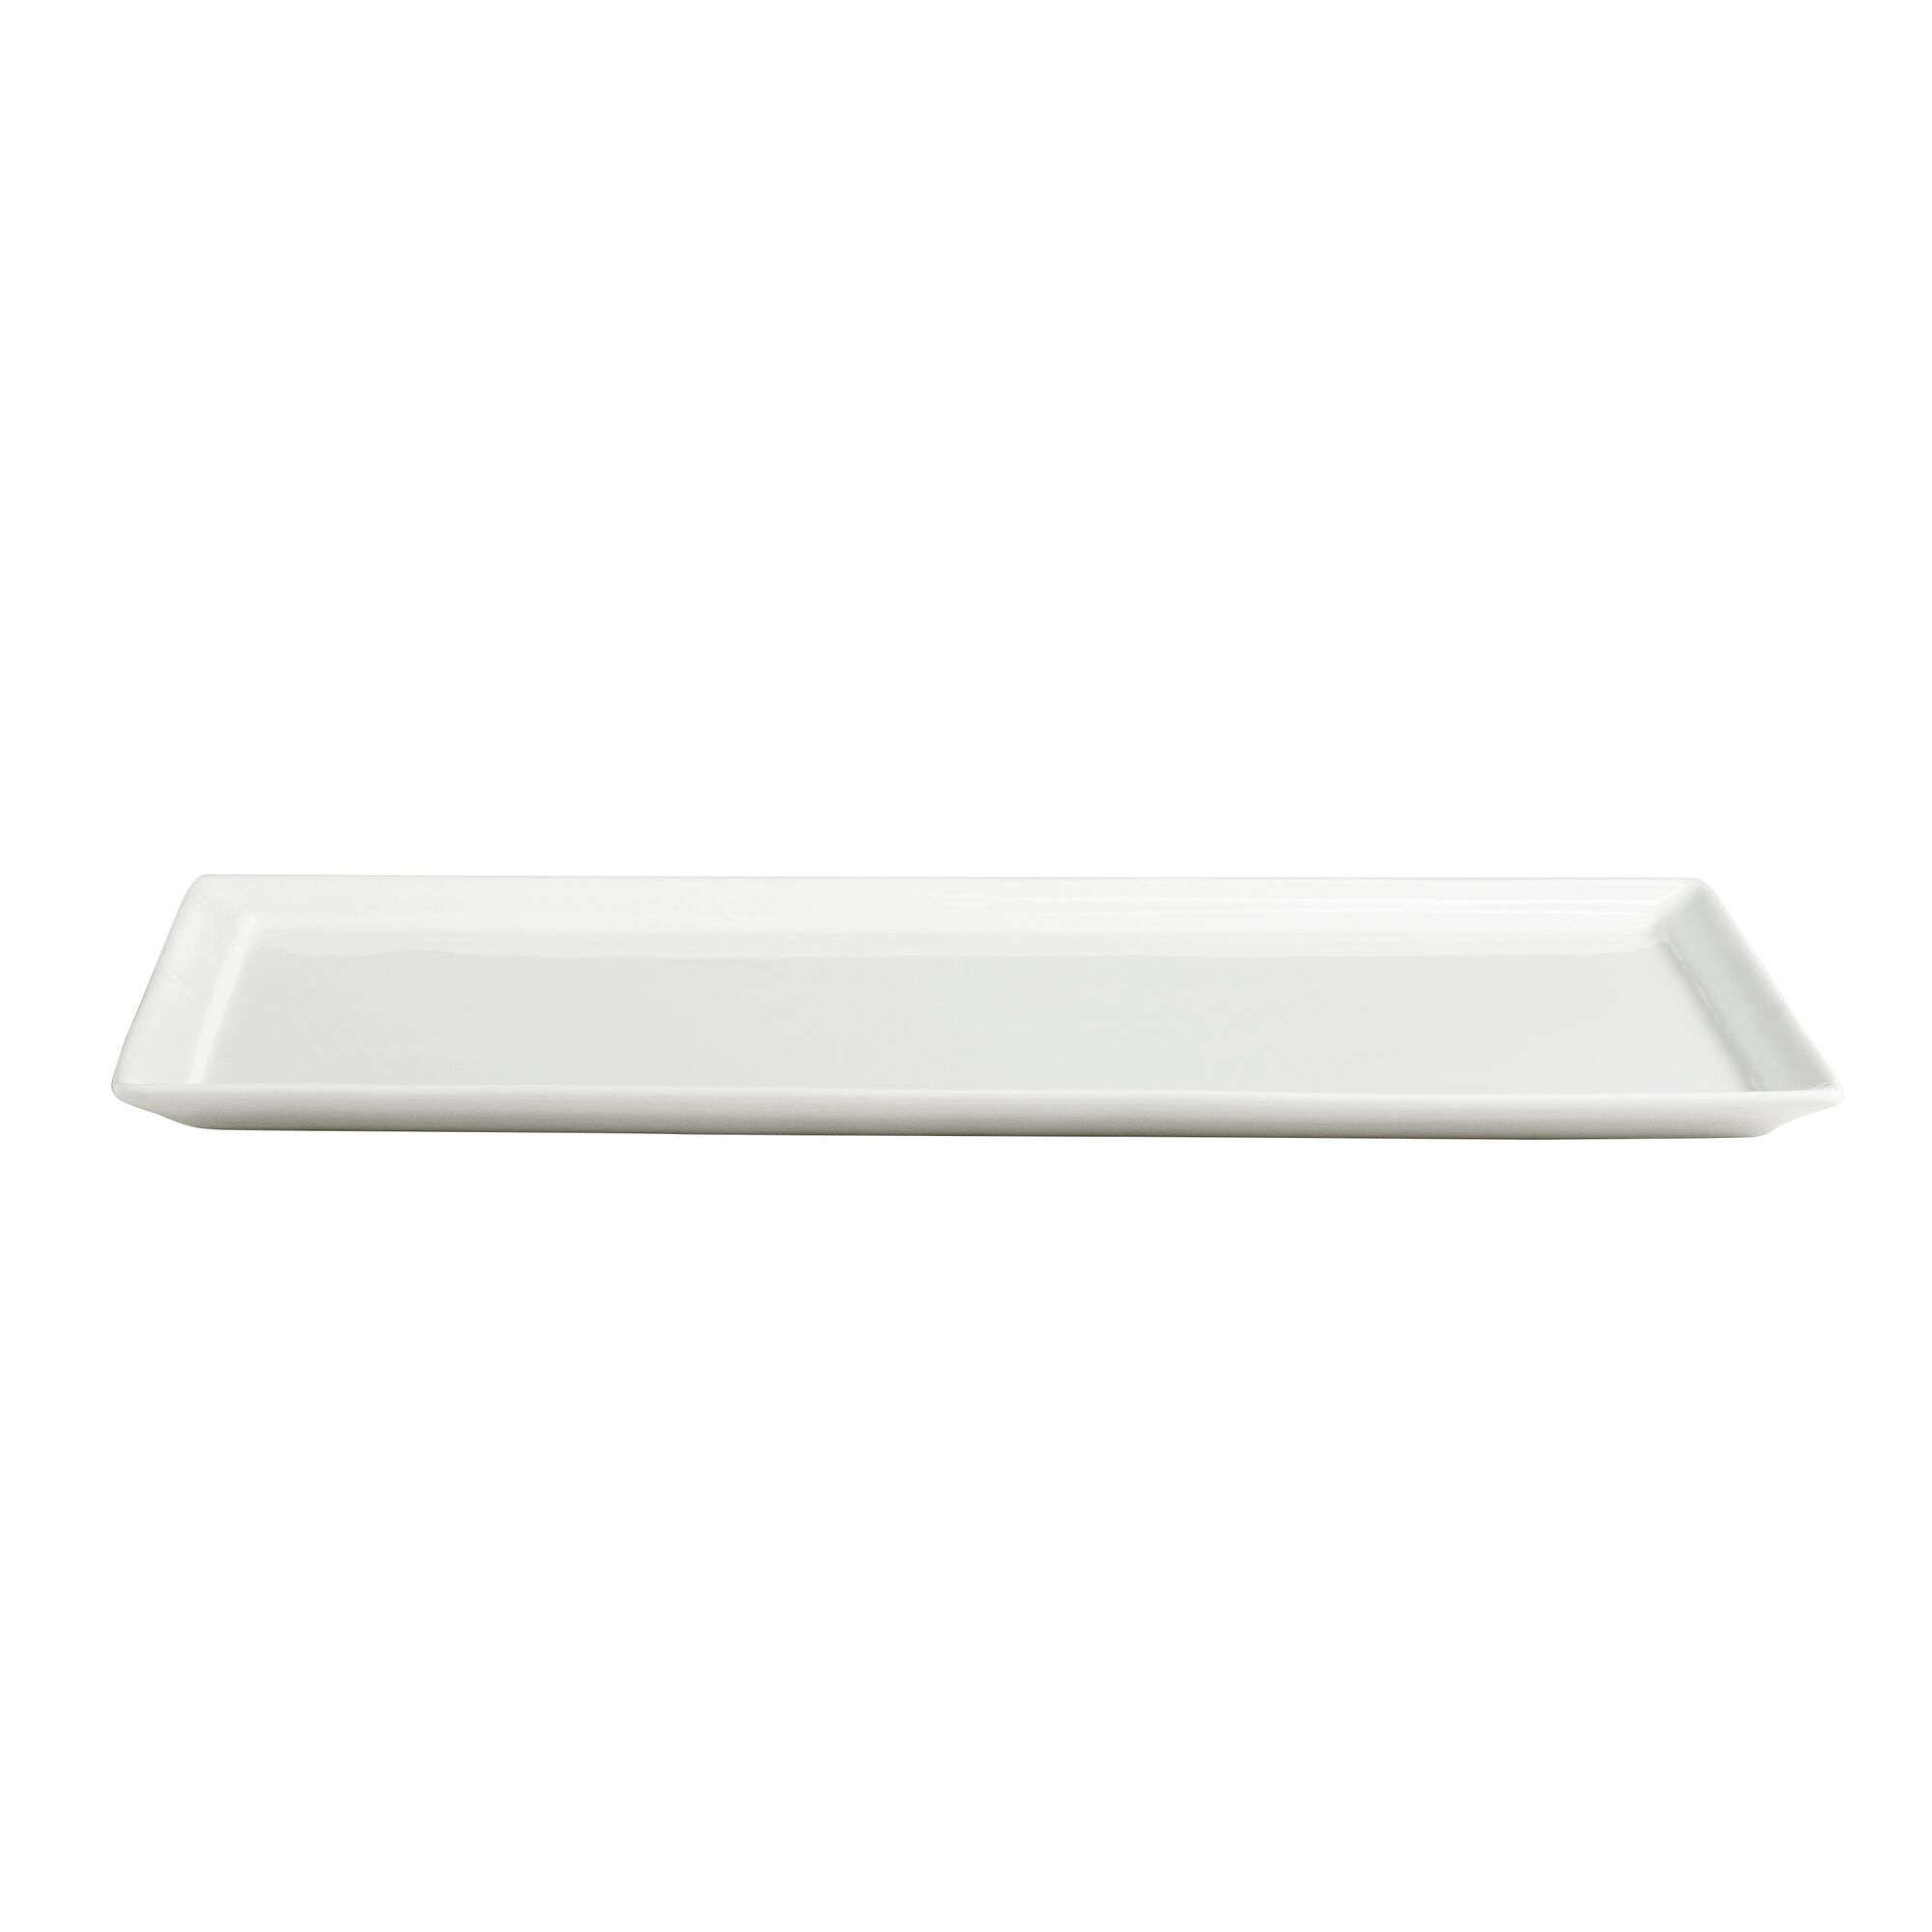 Mini Rectangular White Porcelain Tasting Plate Set Of 4 - World Market